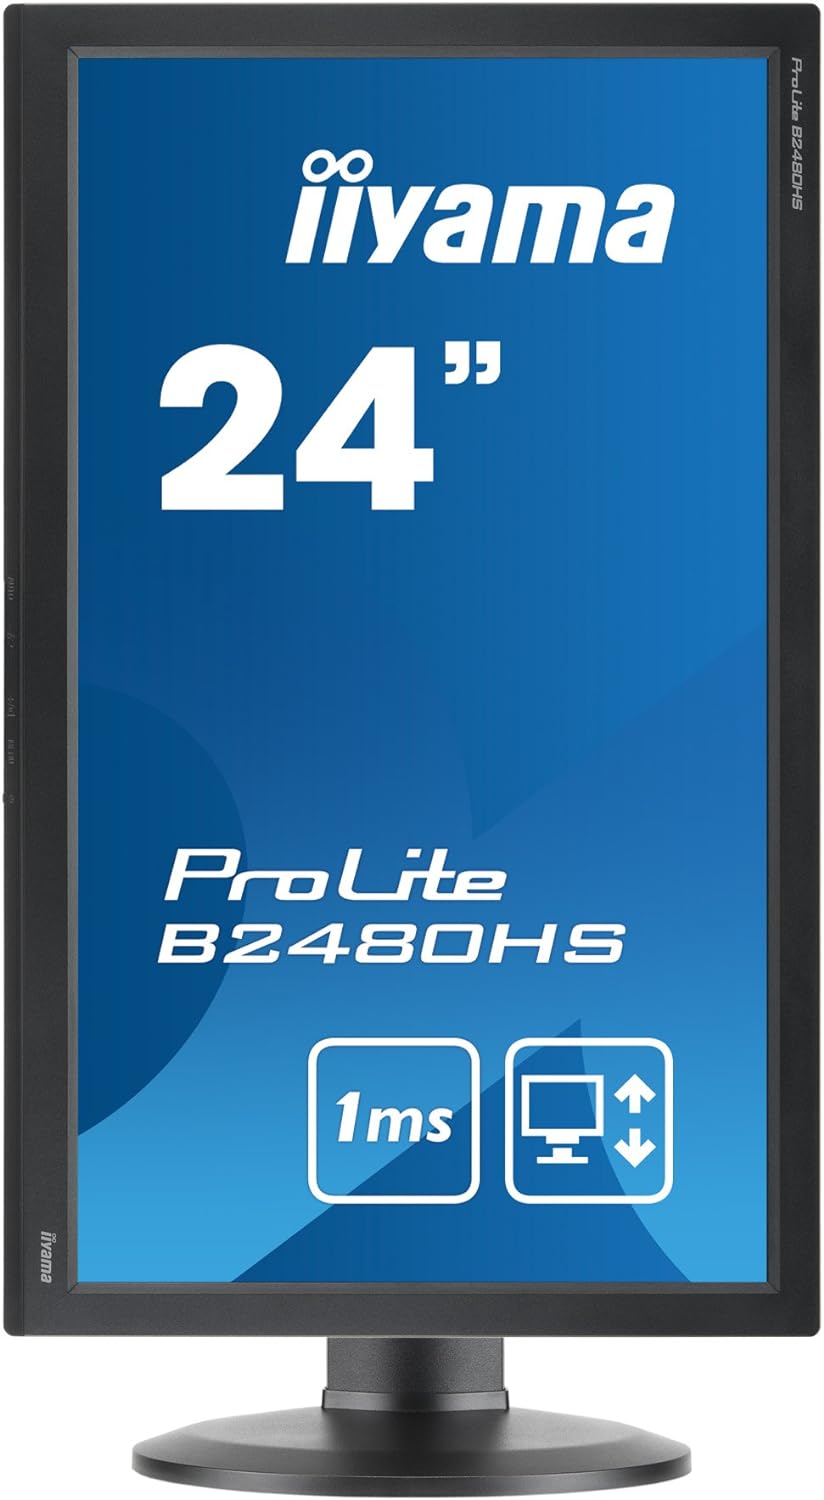 Iiyama ProLite B2480HS Adjustable HD LED Monitor - Black - Refurbished Excellent